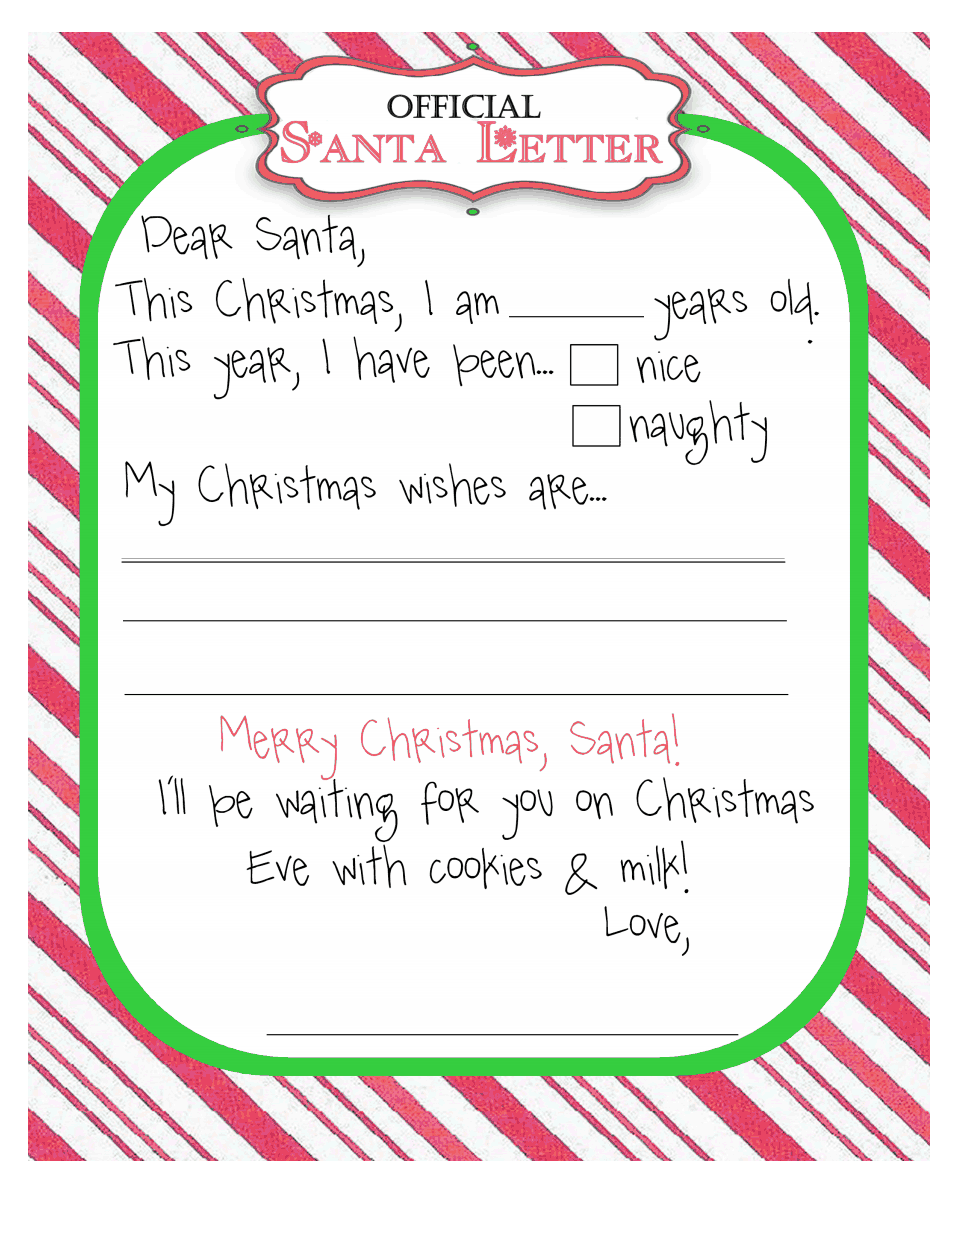 Santaletter pdf Santa Letter Template Christmas 